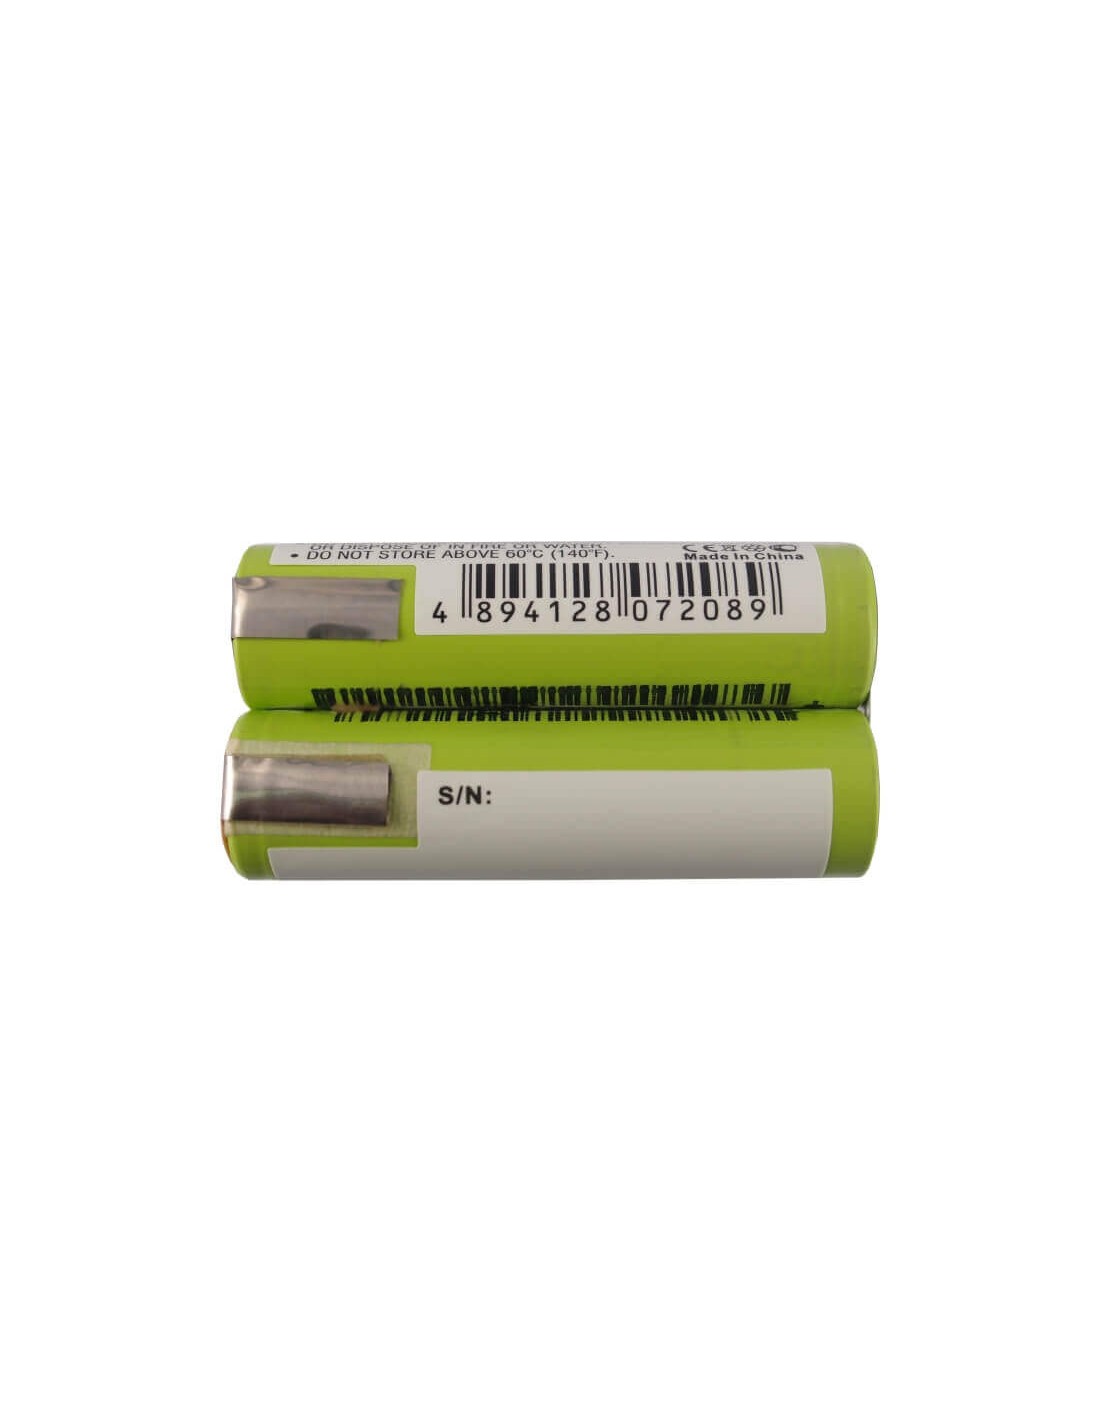 Battery for As-schwabe Handlampe Evo3, Lichtfabrik Led, Black & Decker 7.4V, 2200mAh - 16.28Wh